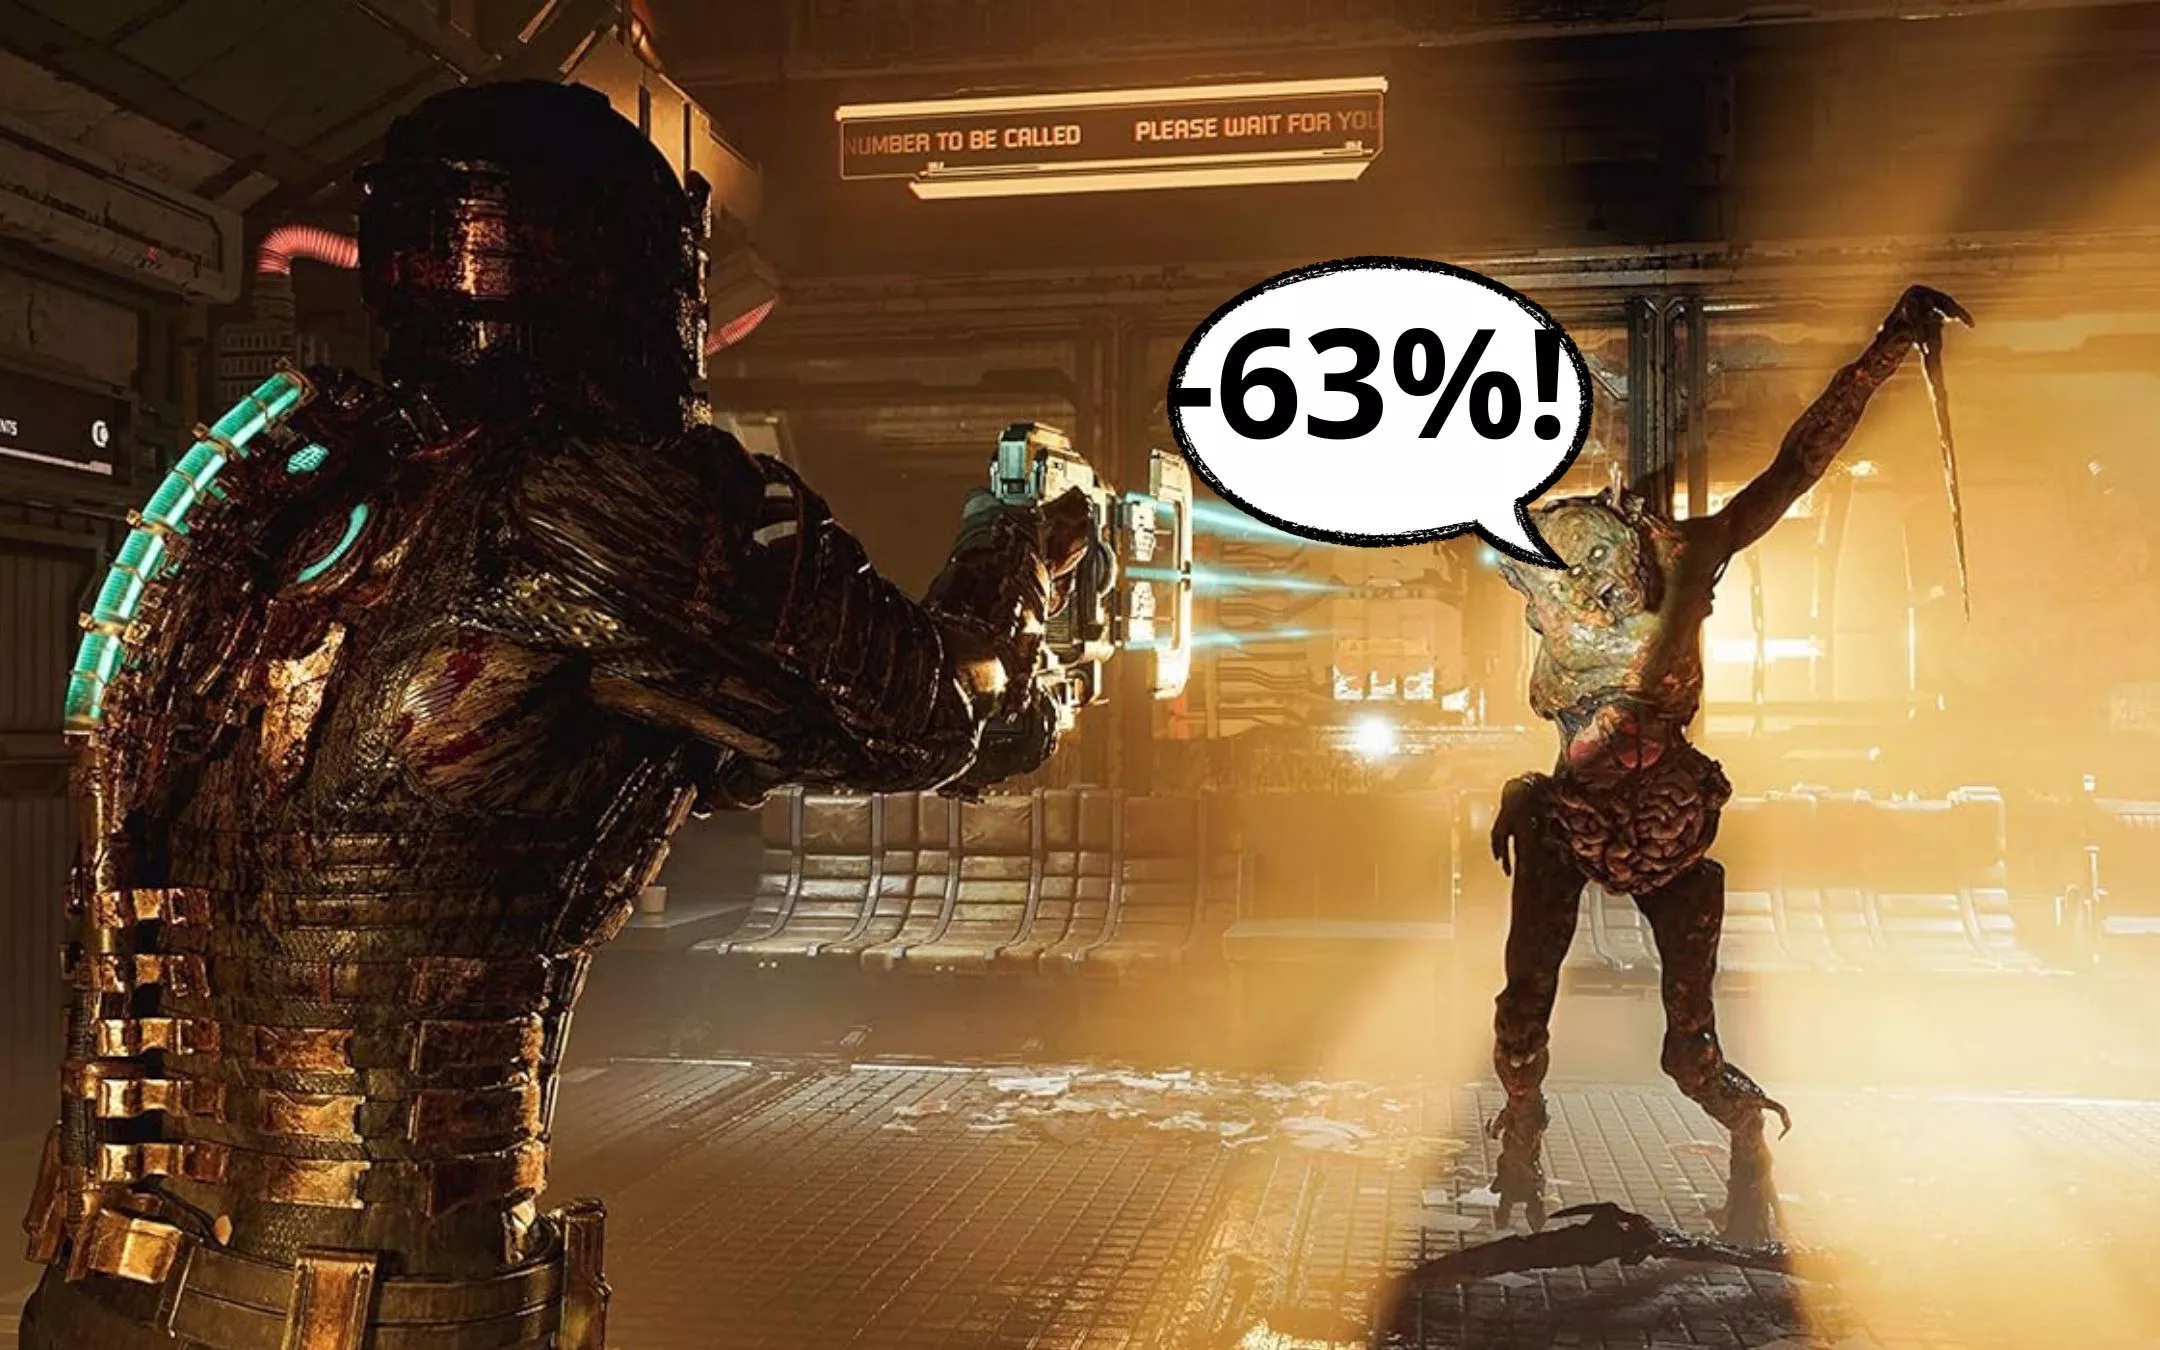 Dead Space per PS5, sul gioco TERRIFICANTE c'è uno sconto MOSTRUOSO:  prendilo ORA! - Webnews